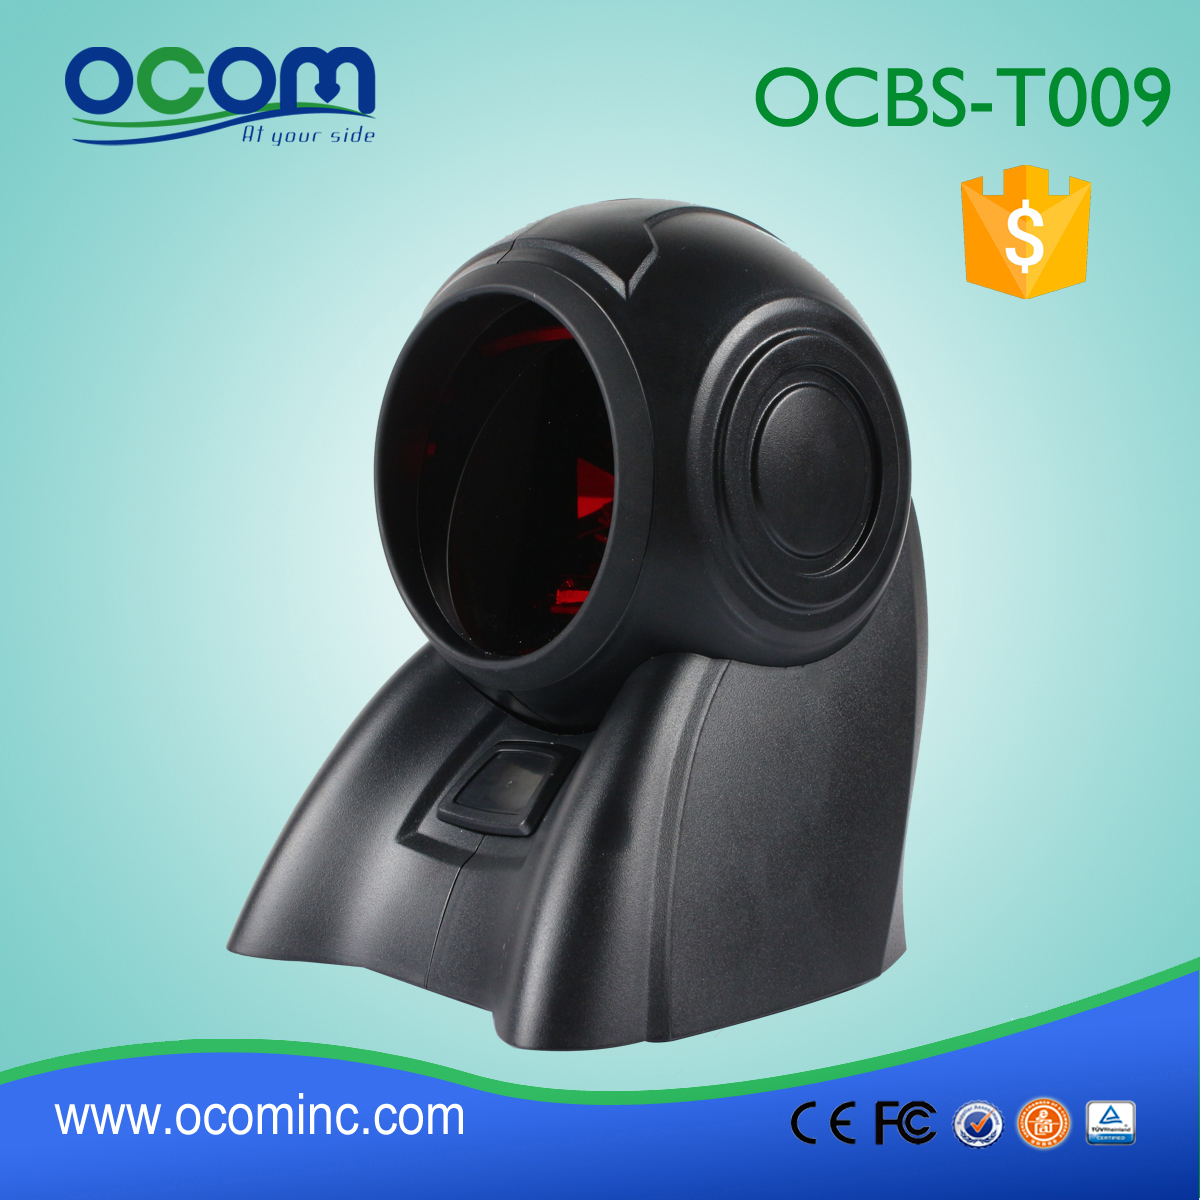 (OCBS-T009) Escáner de código de barras láser omnidireccional clásico 1D